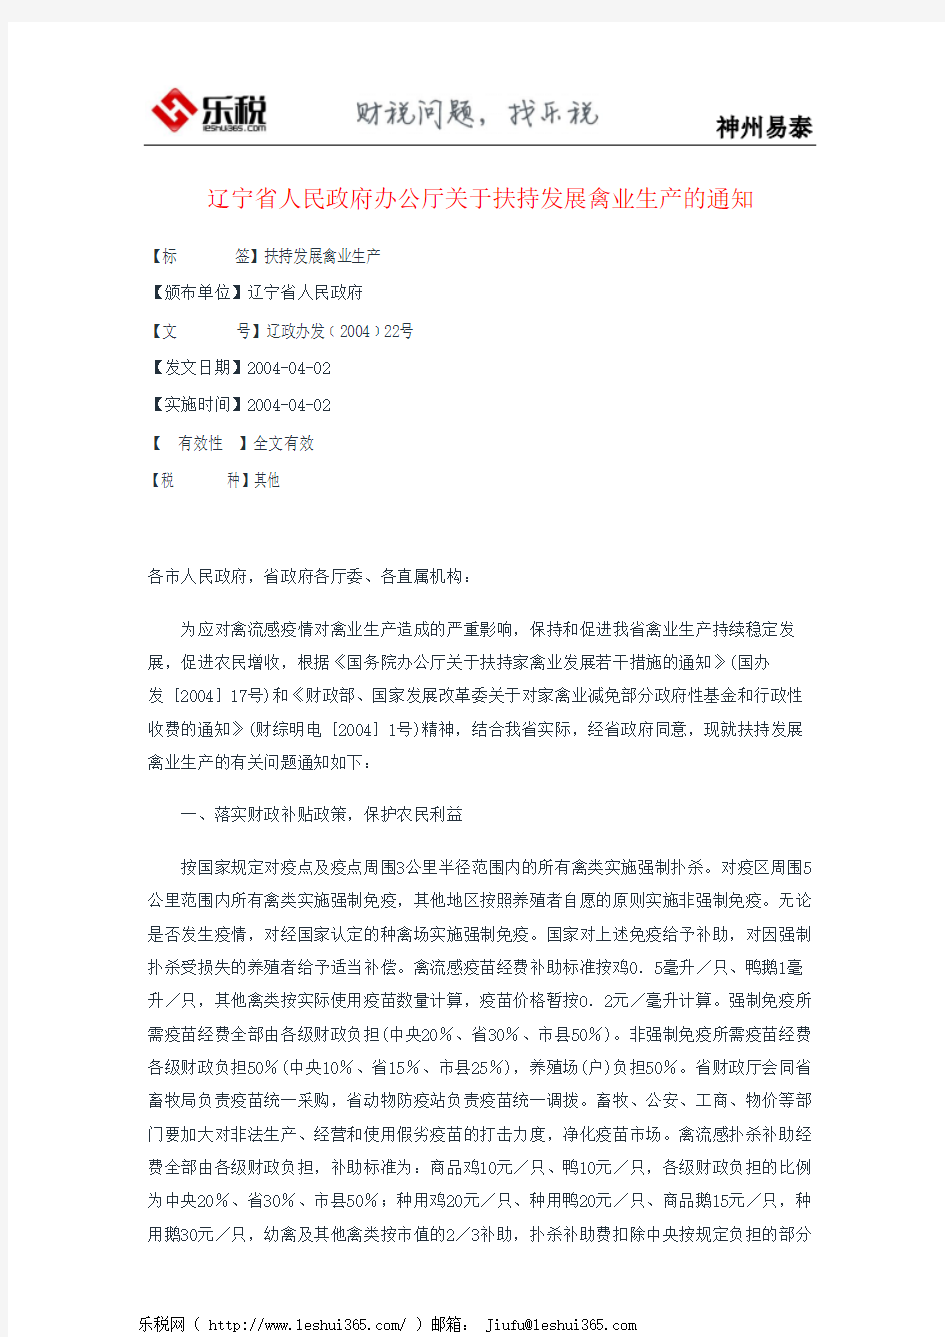 辽宁省人民政府办公厅关于扶持发展禽业生产的通知